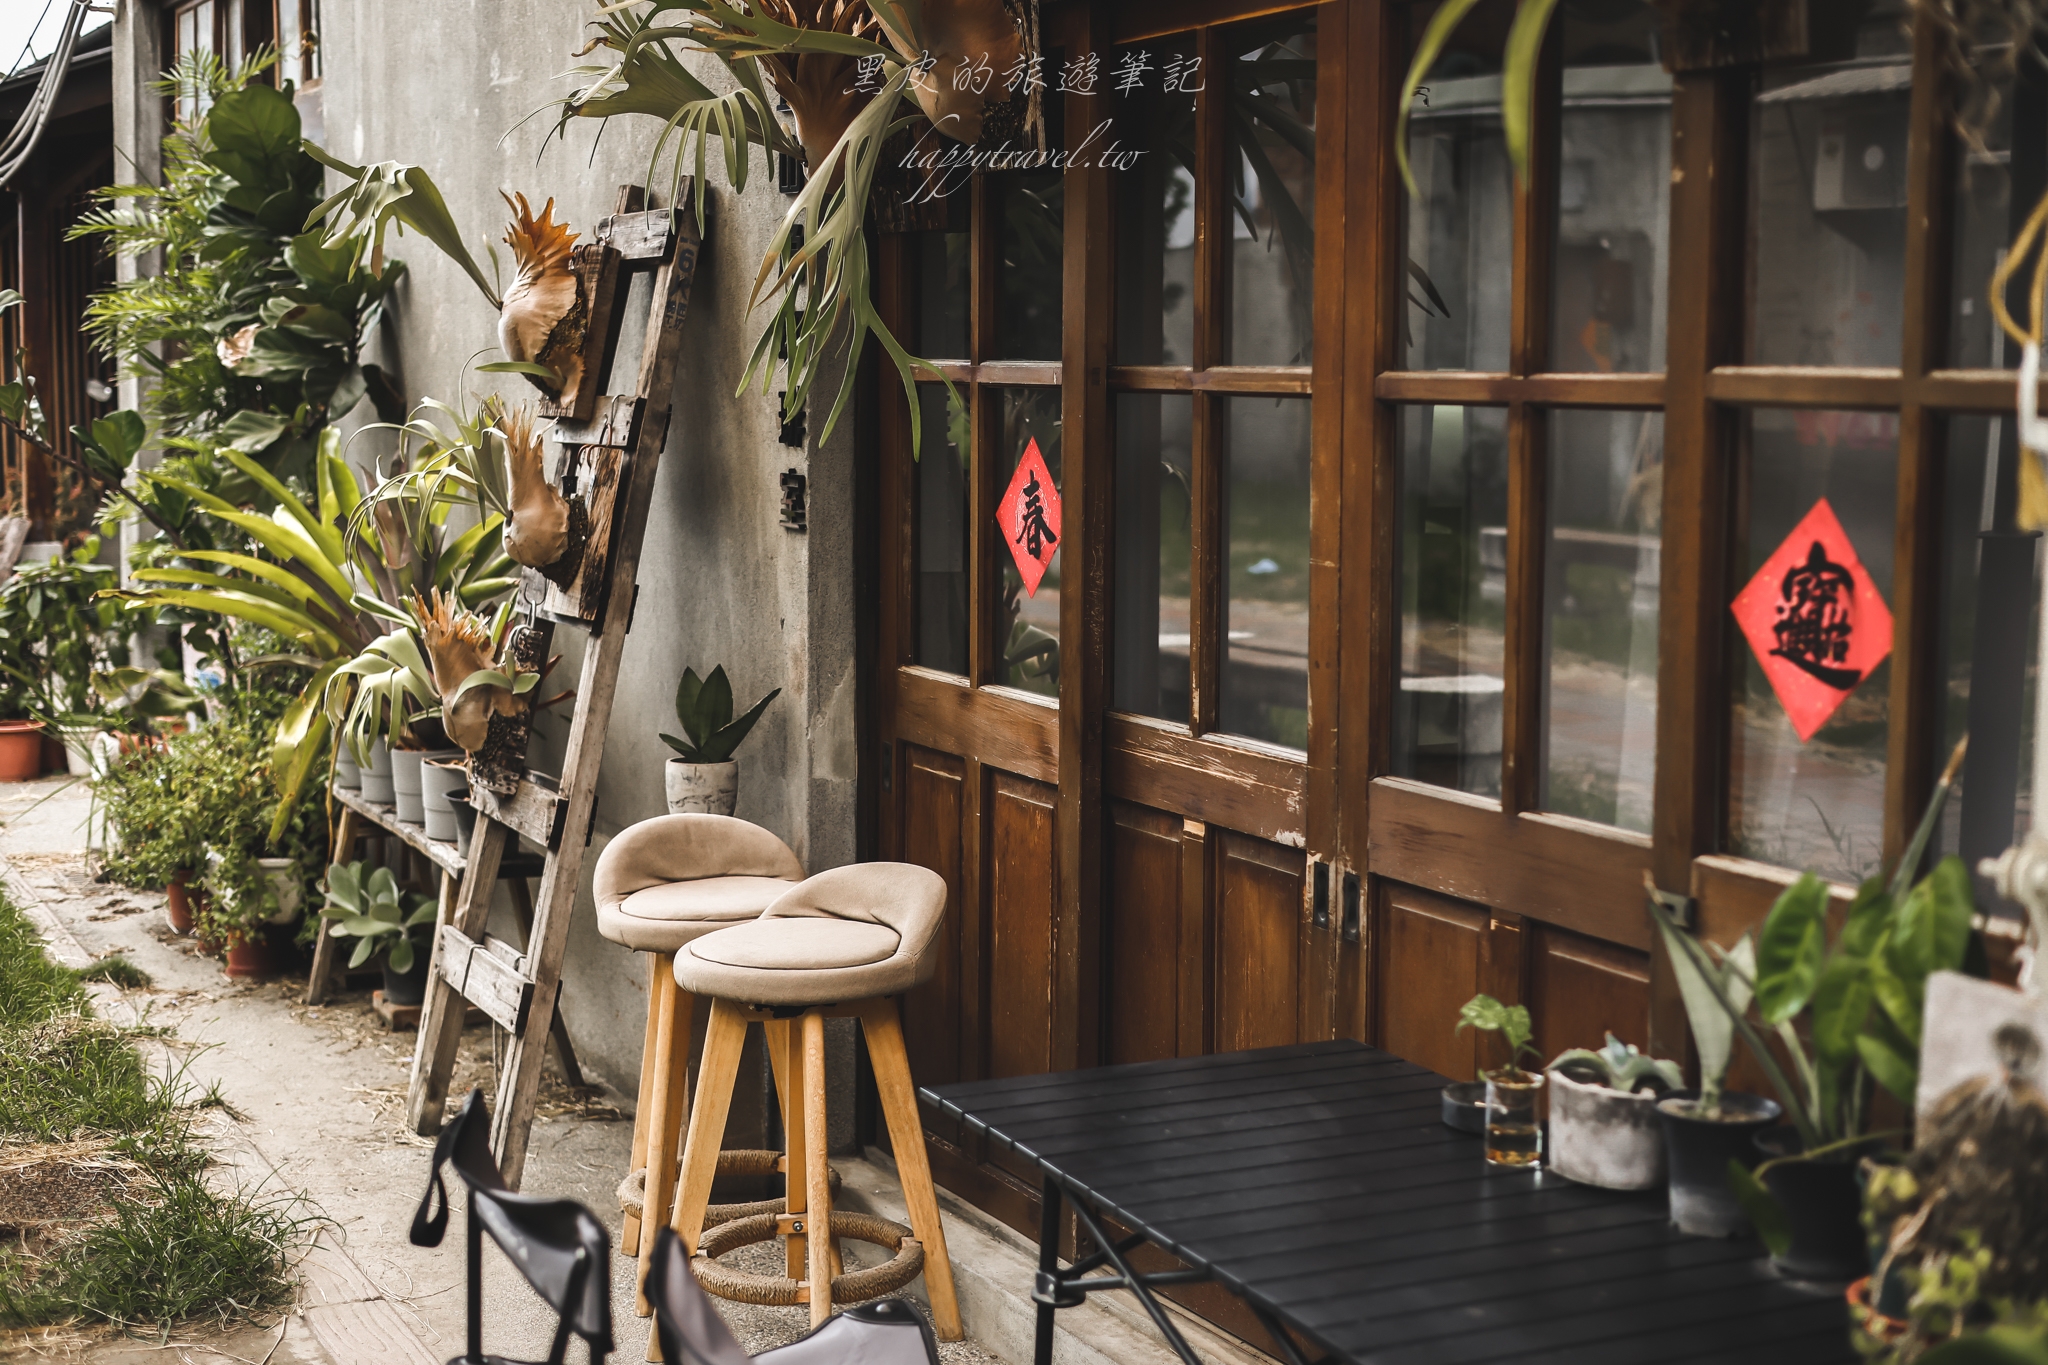 雲林咖啡廳。丘山角珈琲室｜小鄉鎮中的日式老宅咖啡廳，圍繞著綠色植物，享受著自然愜意的下午茶時光/雲林美食/雲林景點